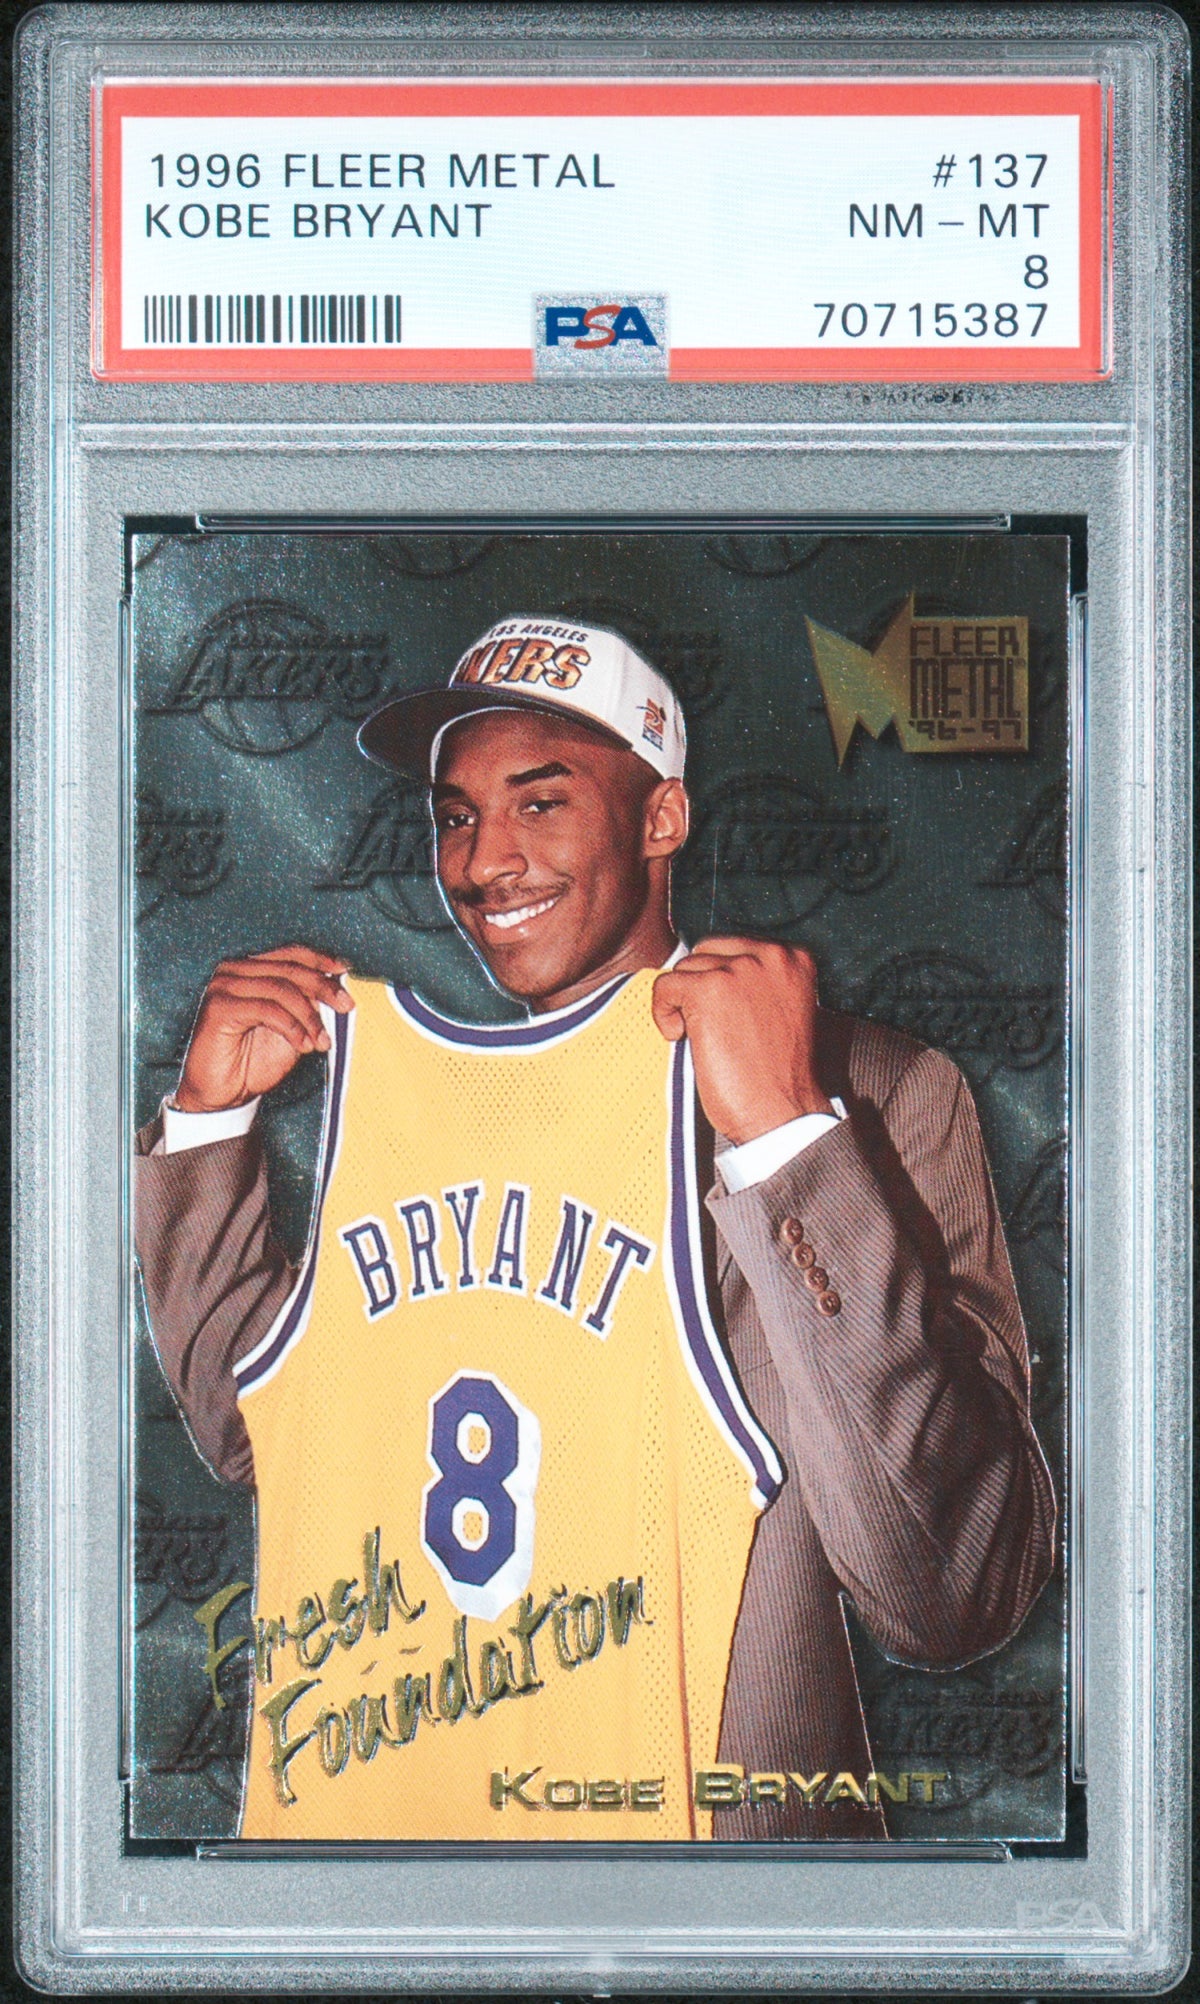 Kobe Bryant 1996 Fleer Metal Basketball Rookie Card #137 Graded PSA 8